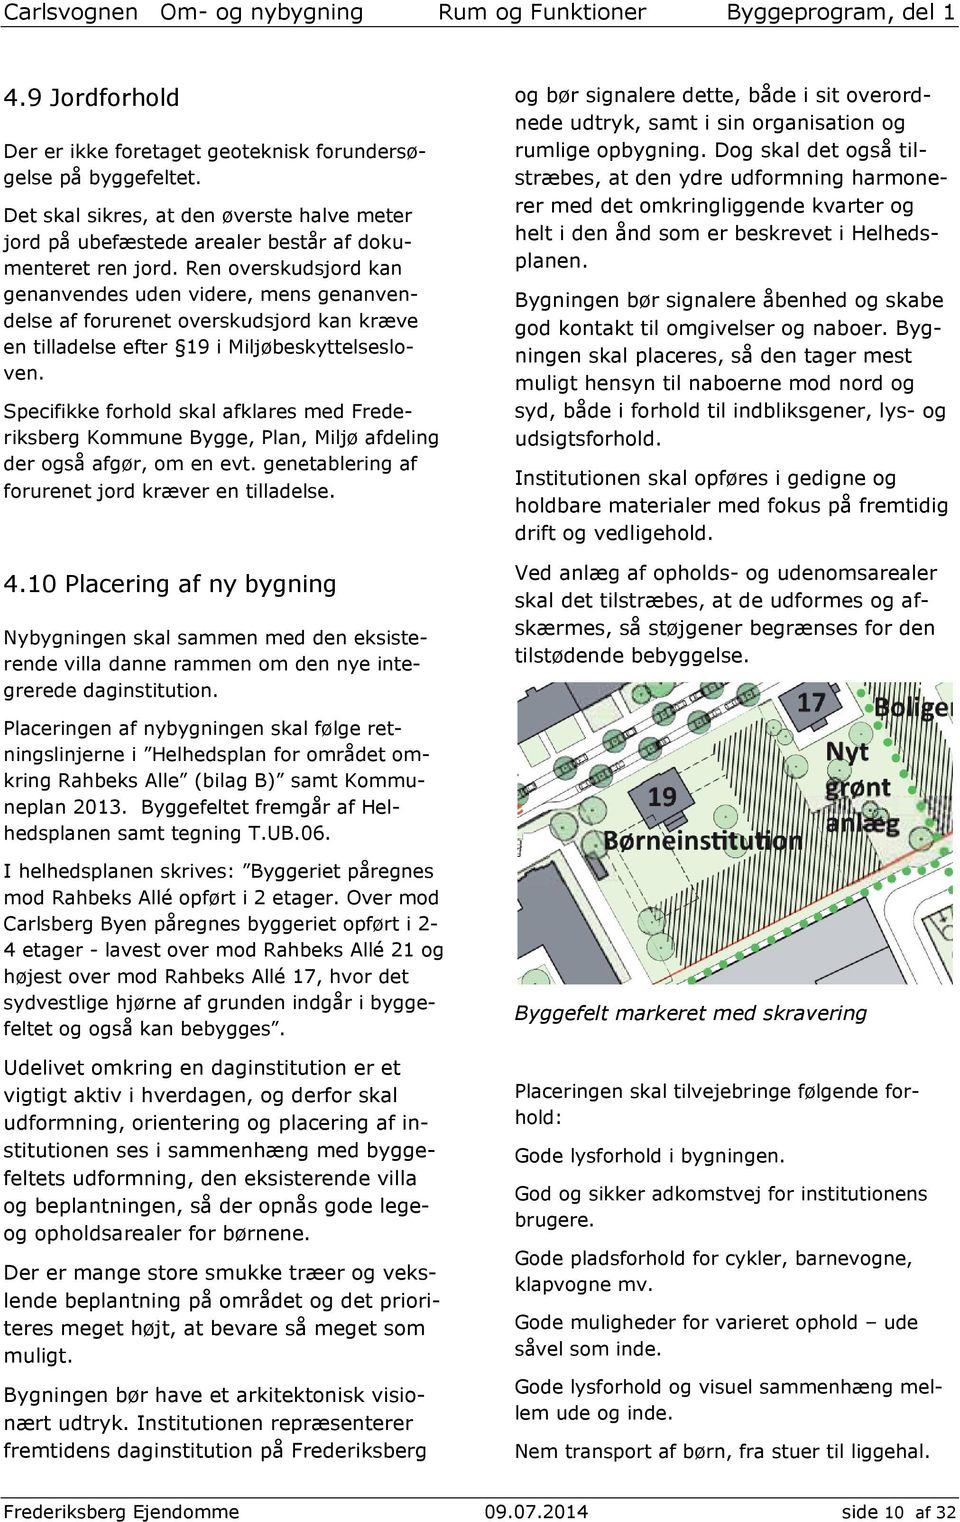 Specifikke forhold skal afklares med Frederiksberg Kommune Bygge, Plan, Miljø afdeling der også afgør, om en evt. genetablering af forurenet jord kræver en tilladelse. 4.